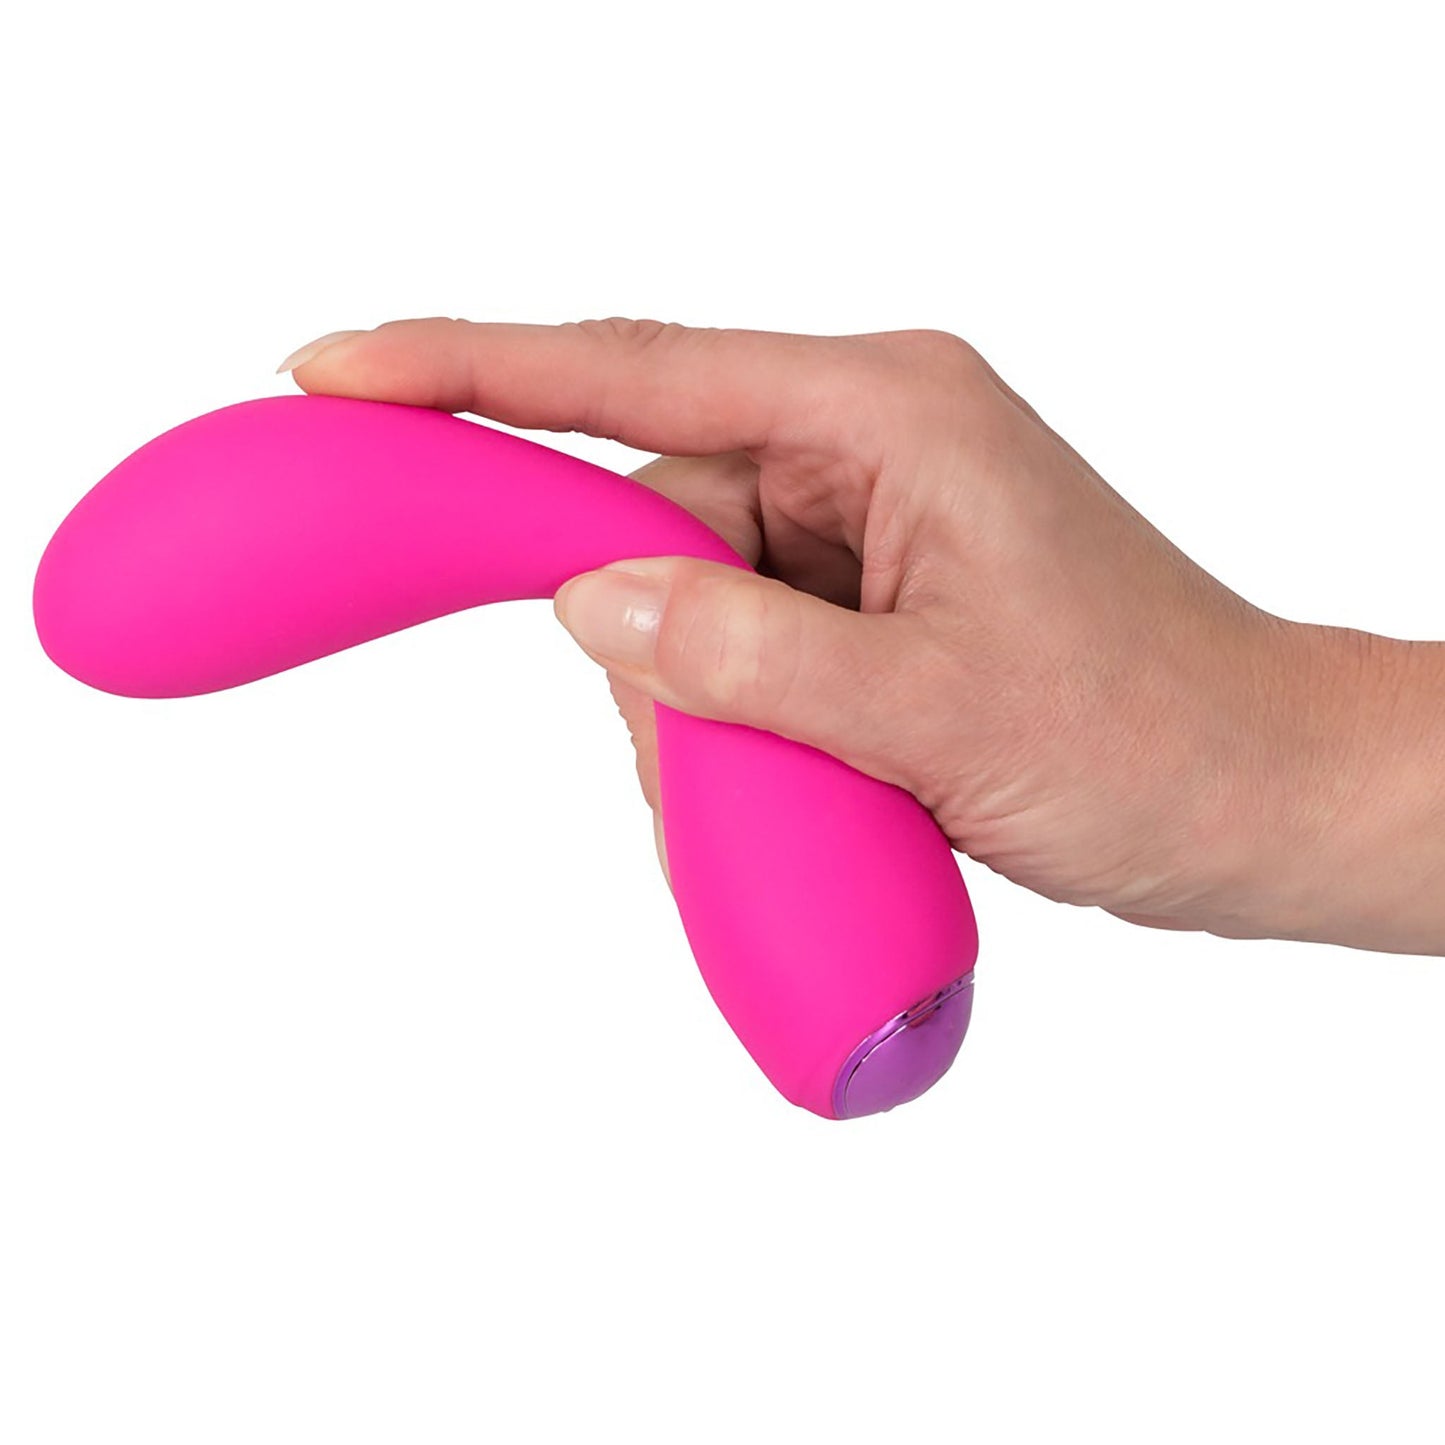 G-Spot Vibrator in pink von Sweet Smile, nach links zeigend